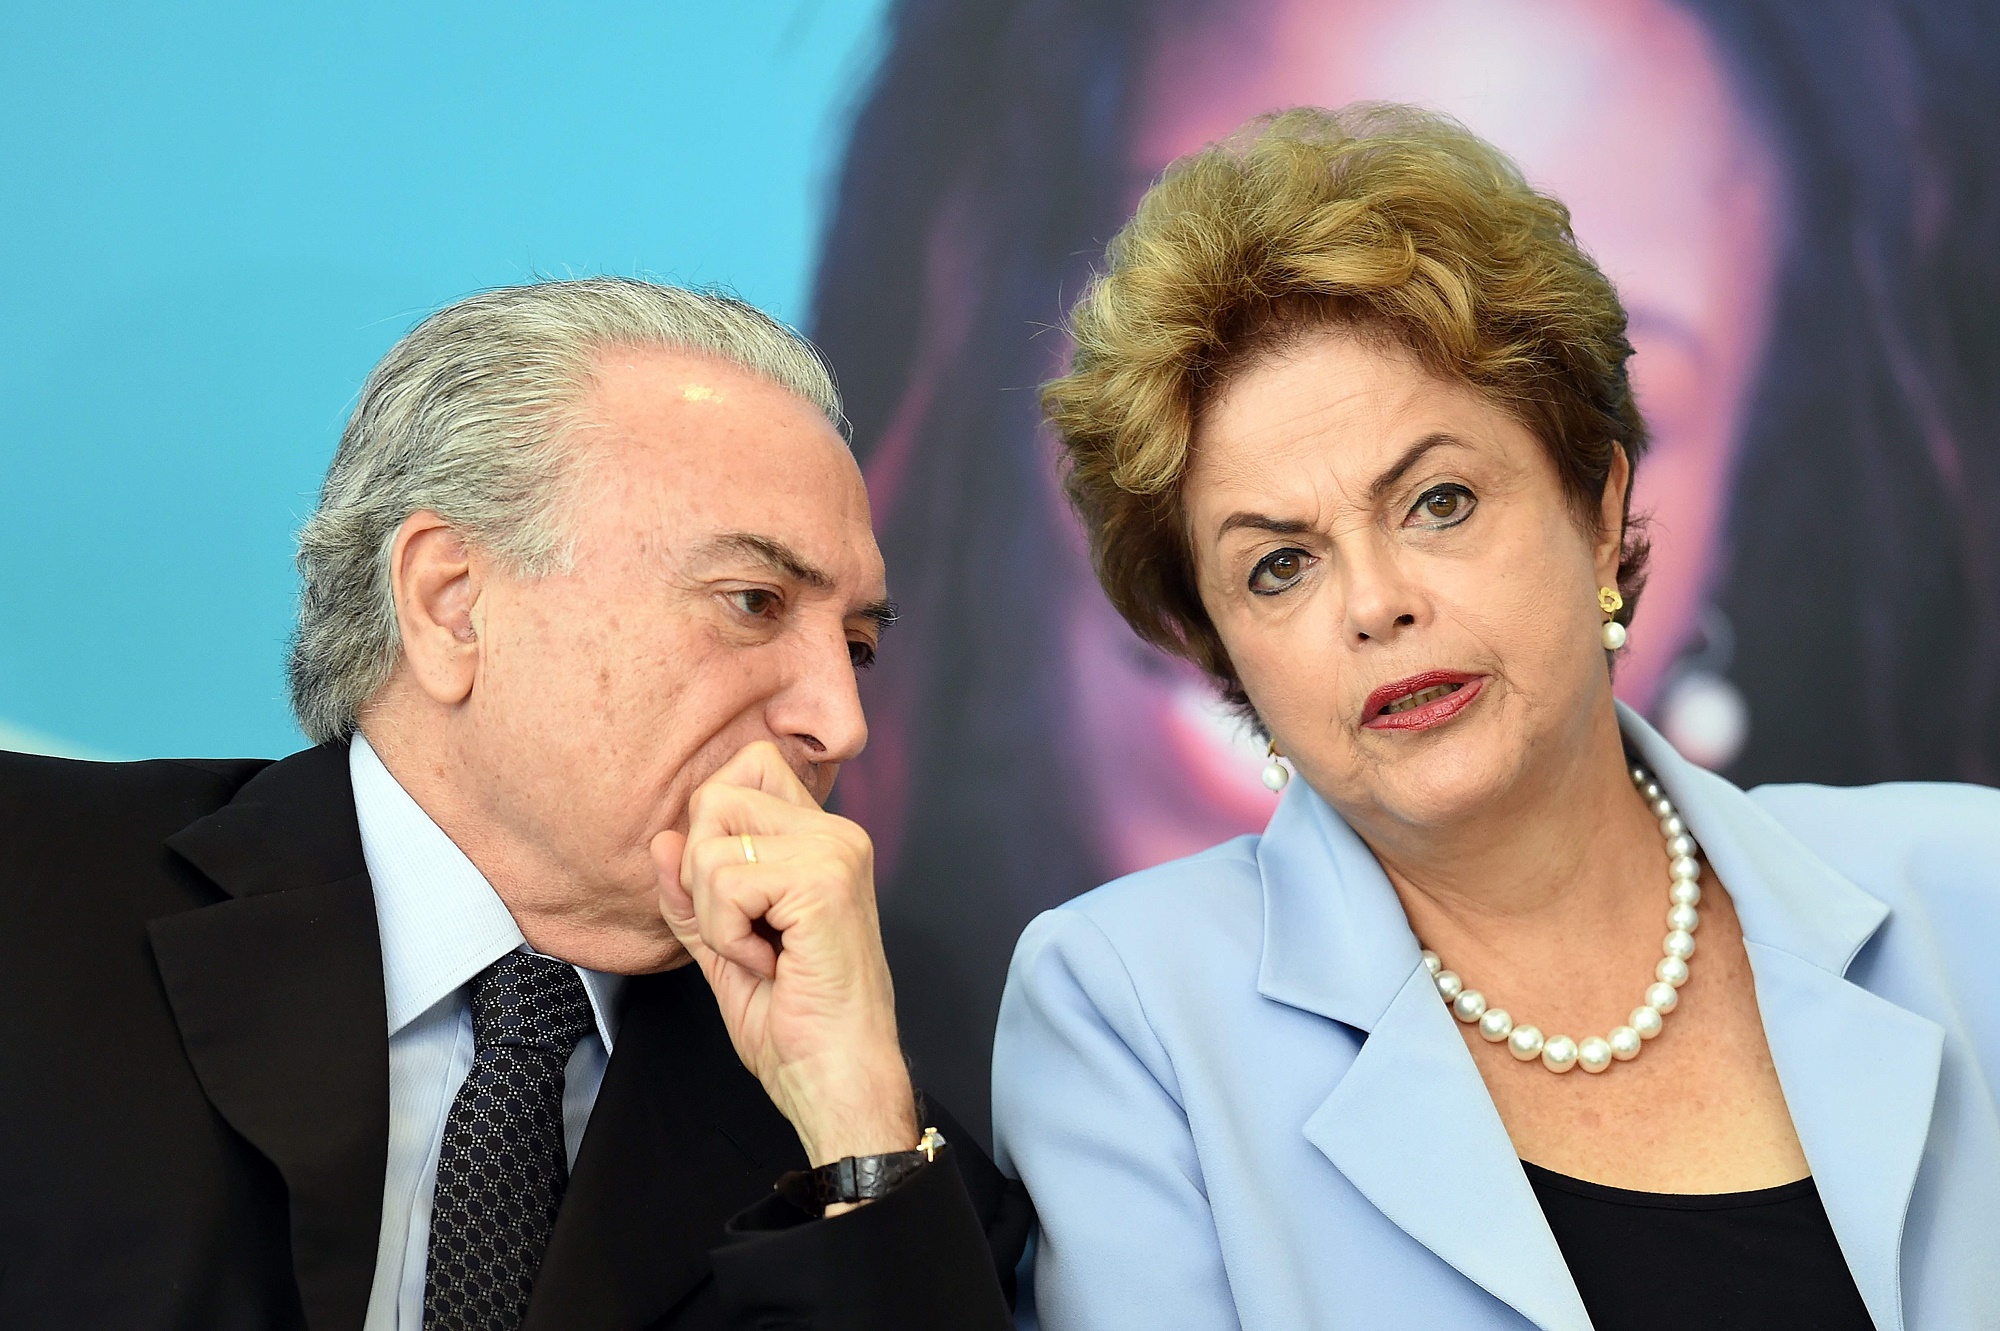 Cả cựu tổng thống Dilma Rousseff lẫn đương kim Tổng thống Michel Temer đều bị cho là có liên đới trách nhiệm trong các vụ bê bối liên quan đến Petrobas và Odebrecht. Tuy nhiên, ông Temer khẳng định chưa từng có những hoạt động làm ăn phi pháp với công ty này như các cáo buộc. (Nguồn: AFP/TTXVN)